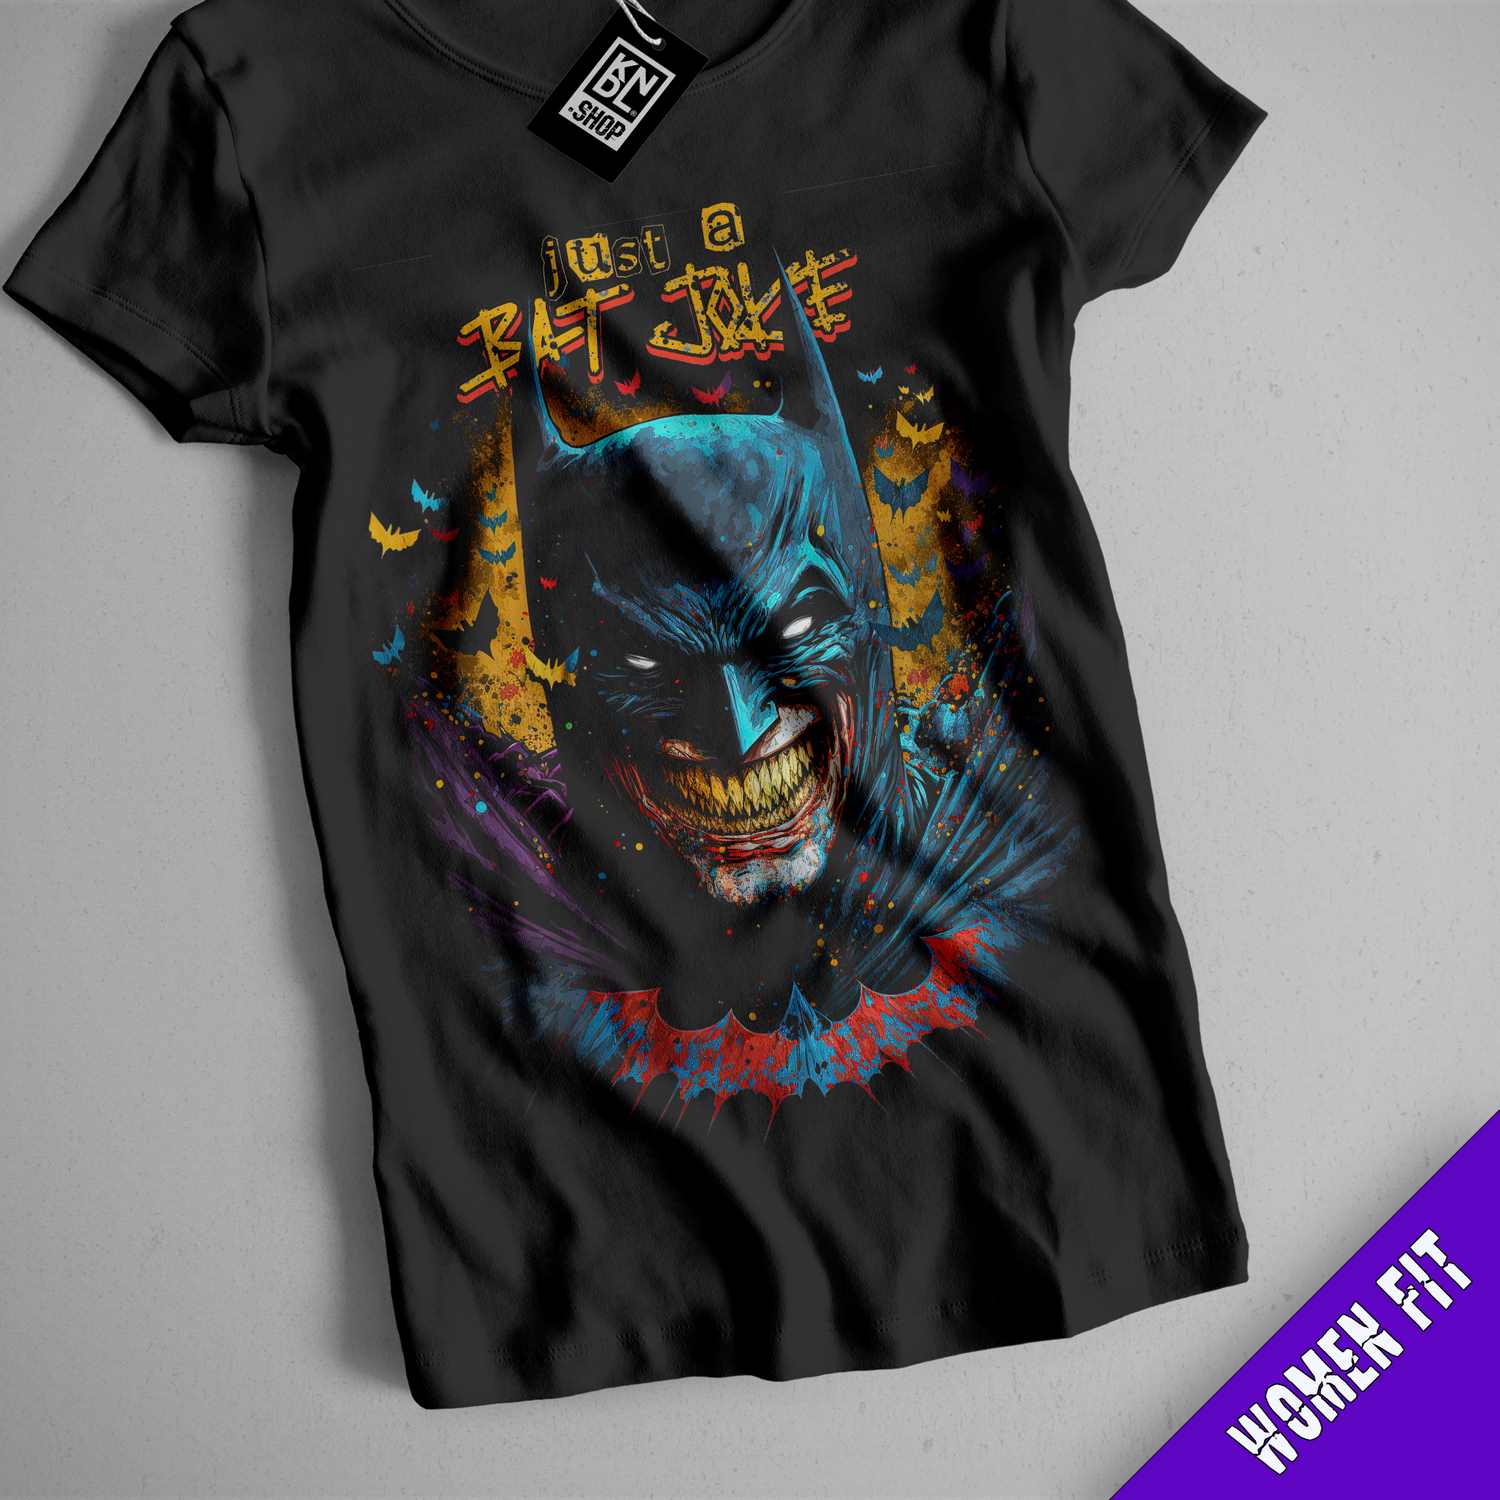 a batman t - shirt with a joker face on it